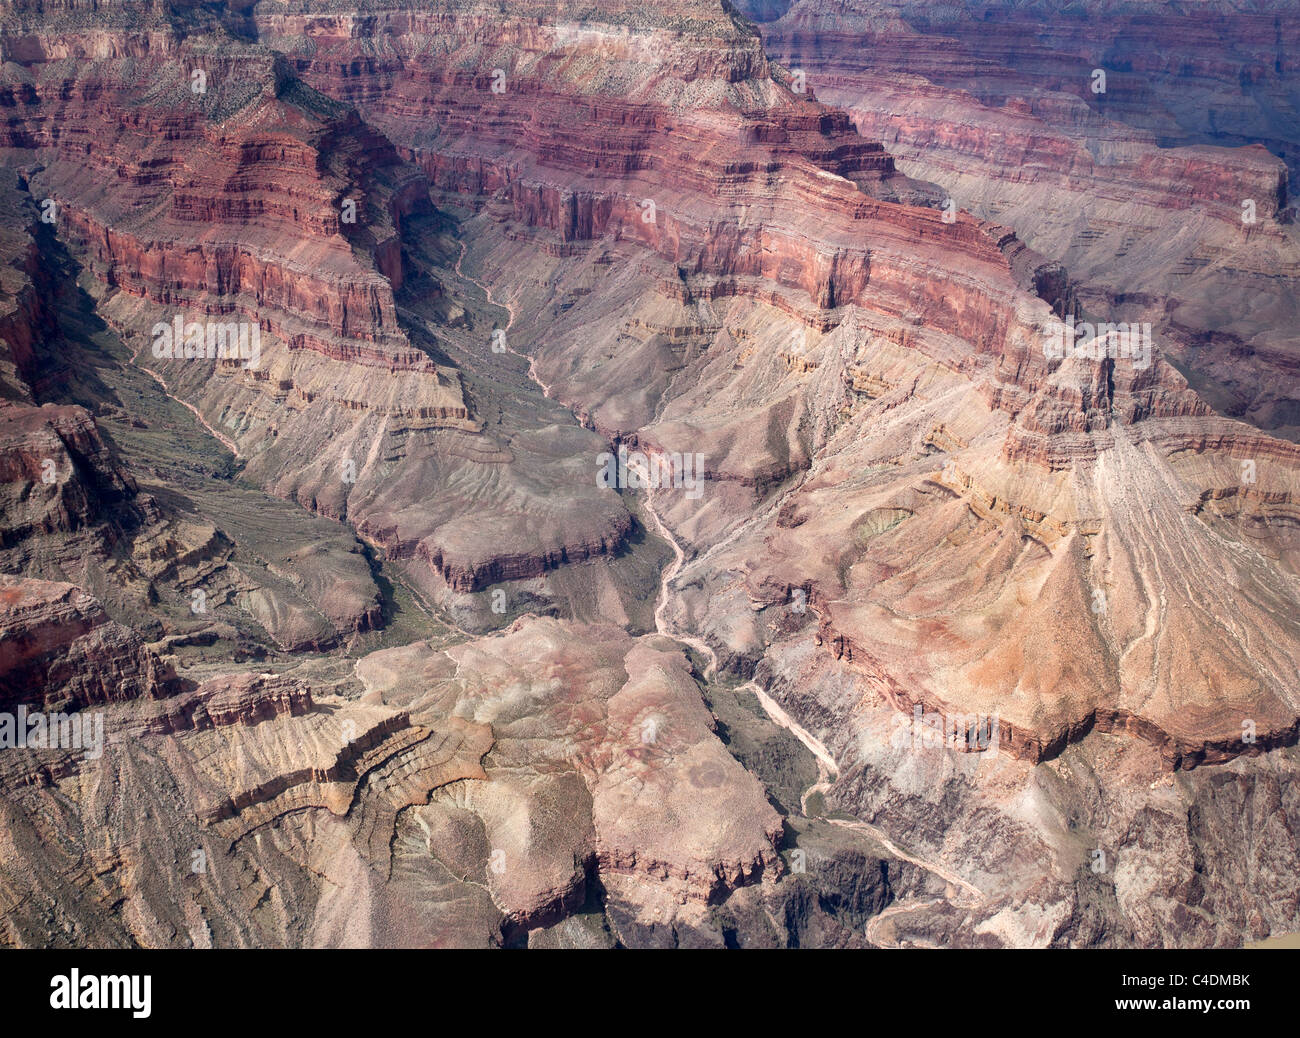 Vue aérienne grand canyon arizona usa montrant les strates et la géologie et des couleurs dans les couches de roche Banque D'Images